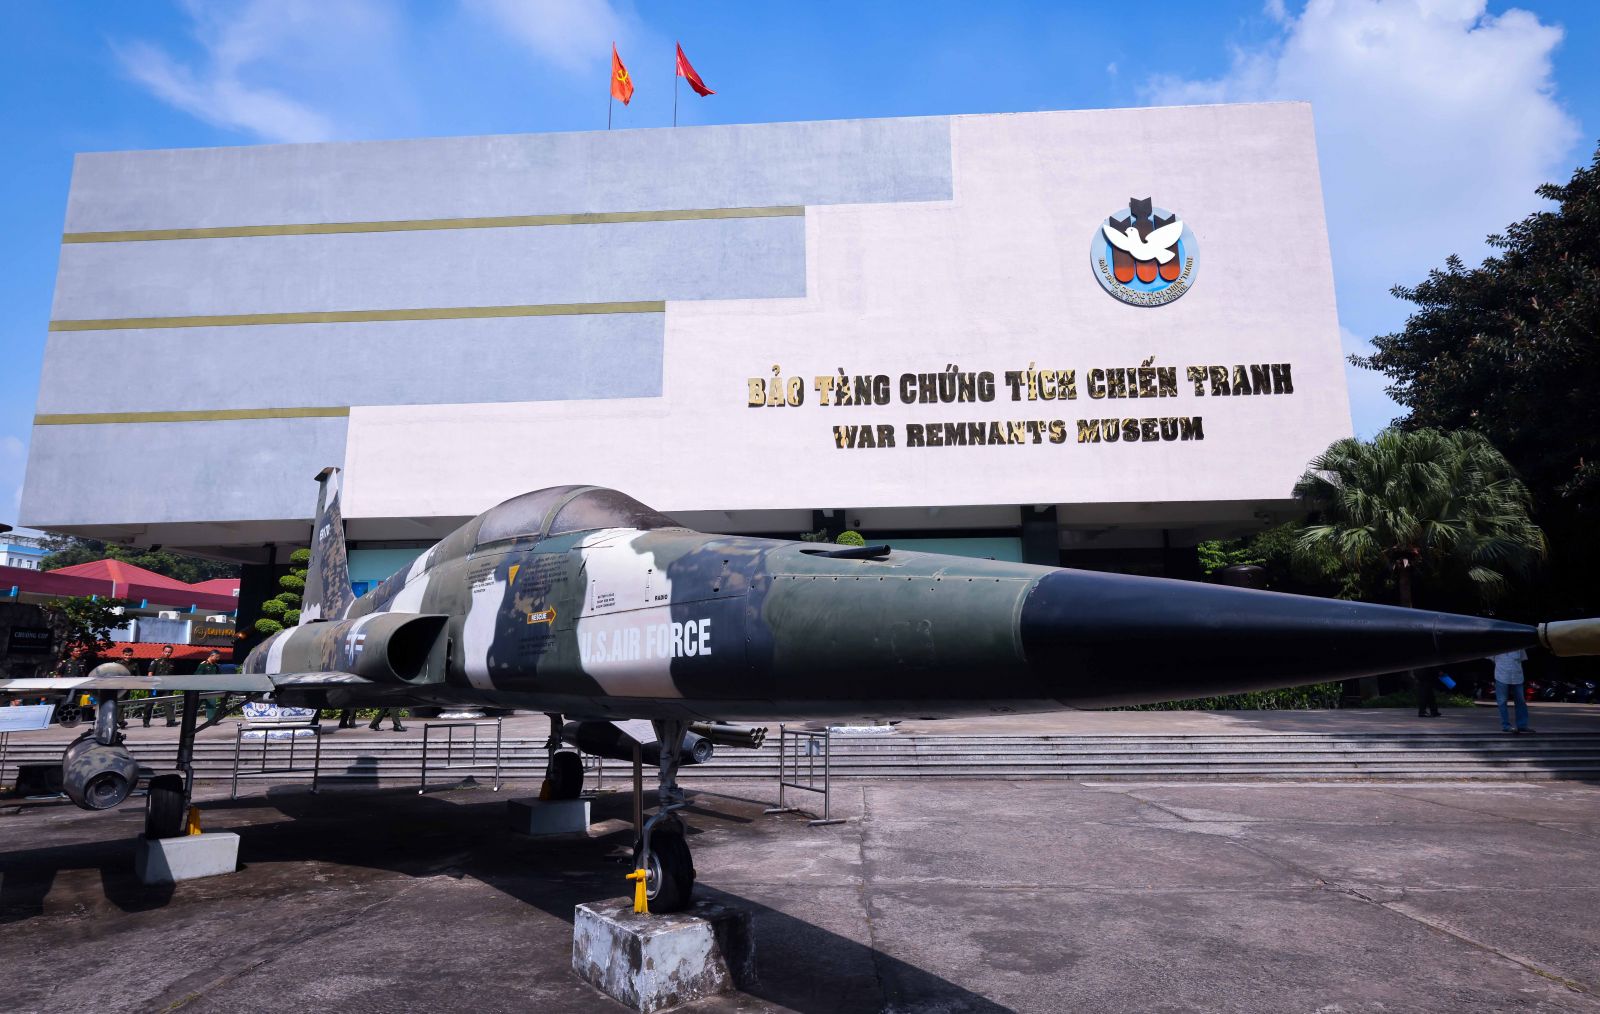 Bảo tàng Chứng tích chiến tranh trên đường Võ Văn Tần (quận 3) là điểm đến với nhiều tư liệu, hiện vật giới thiệu quá trình thực dân Pháp và quân đội Mỹ tiến hành chiến tranh xâm lược Việt Nam.